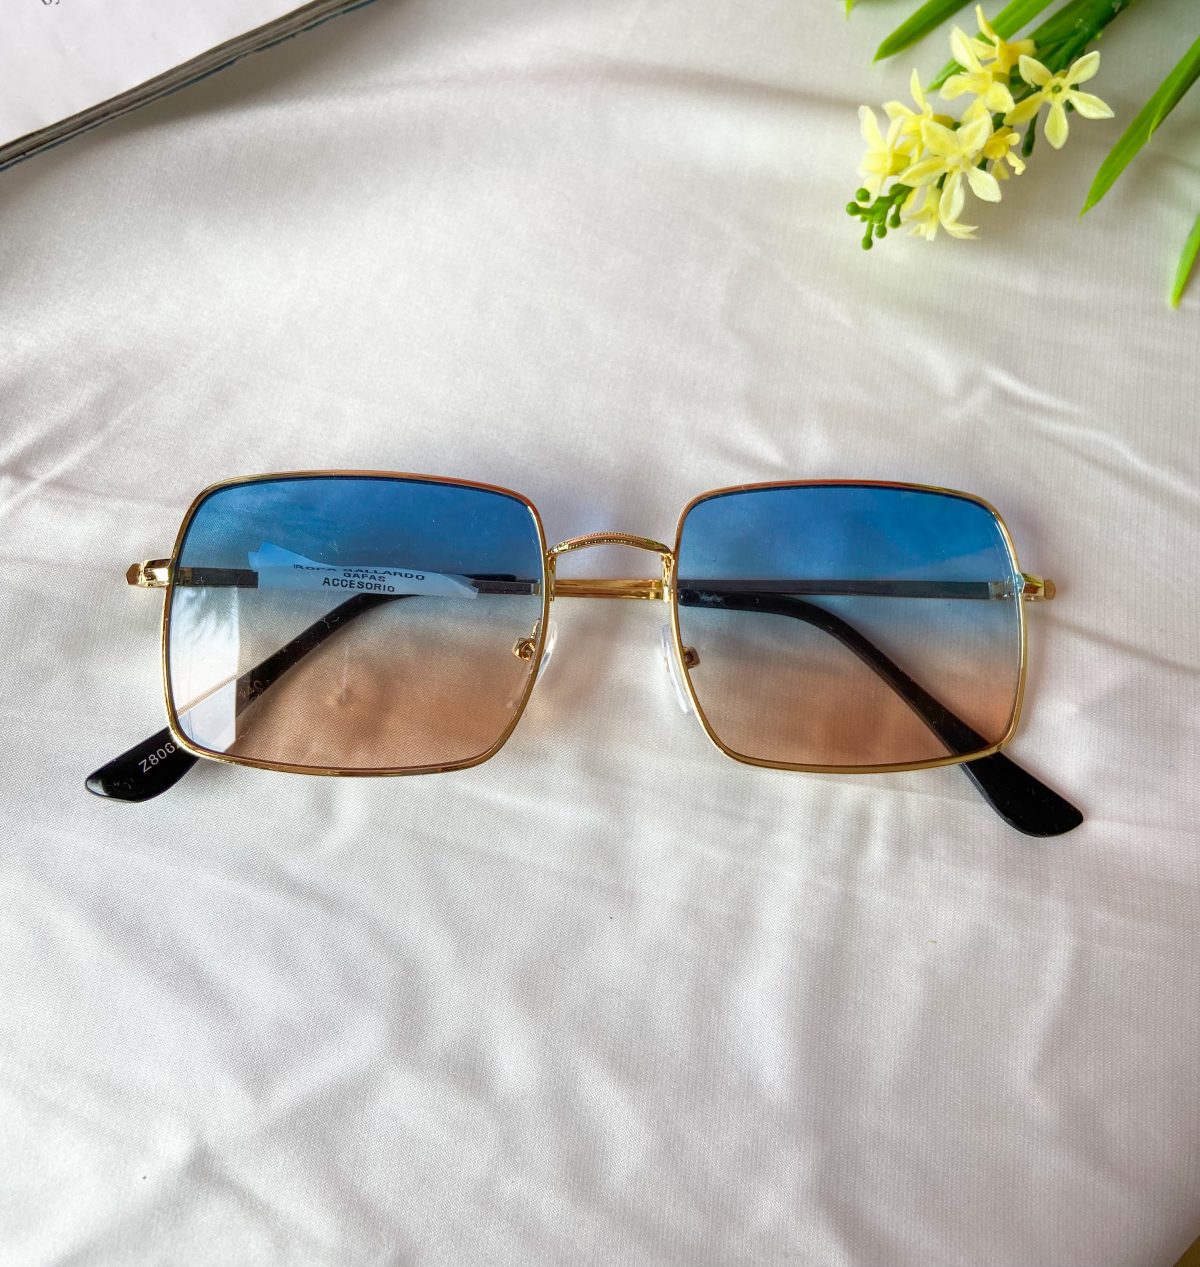 gafas celeste azul y café - accesorios - lentes de sol - ropa gallardo